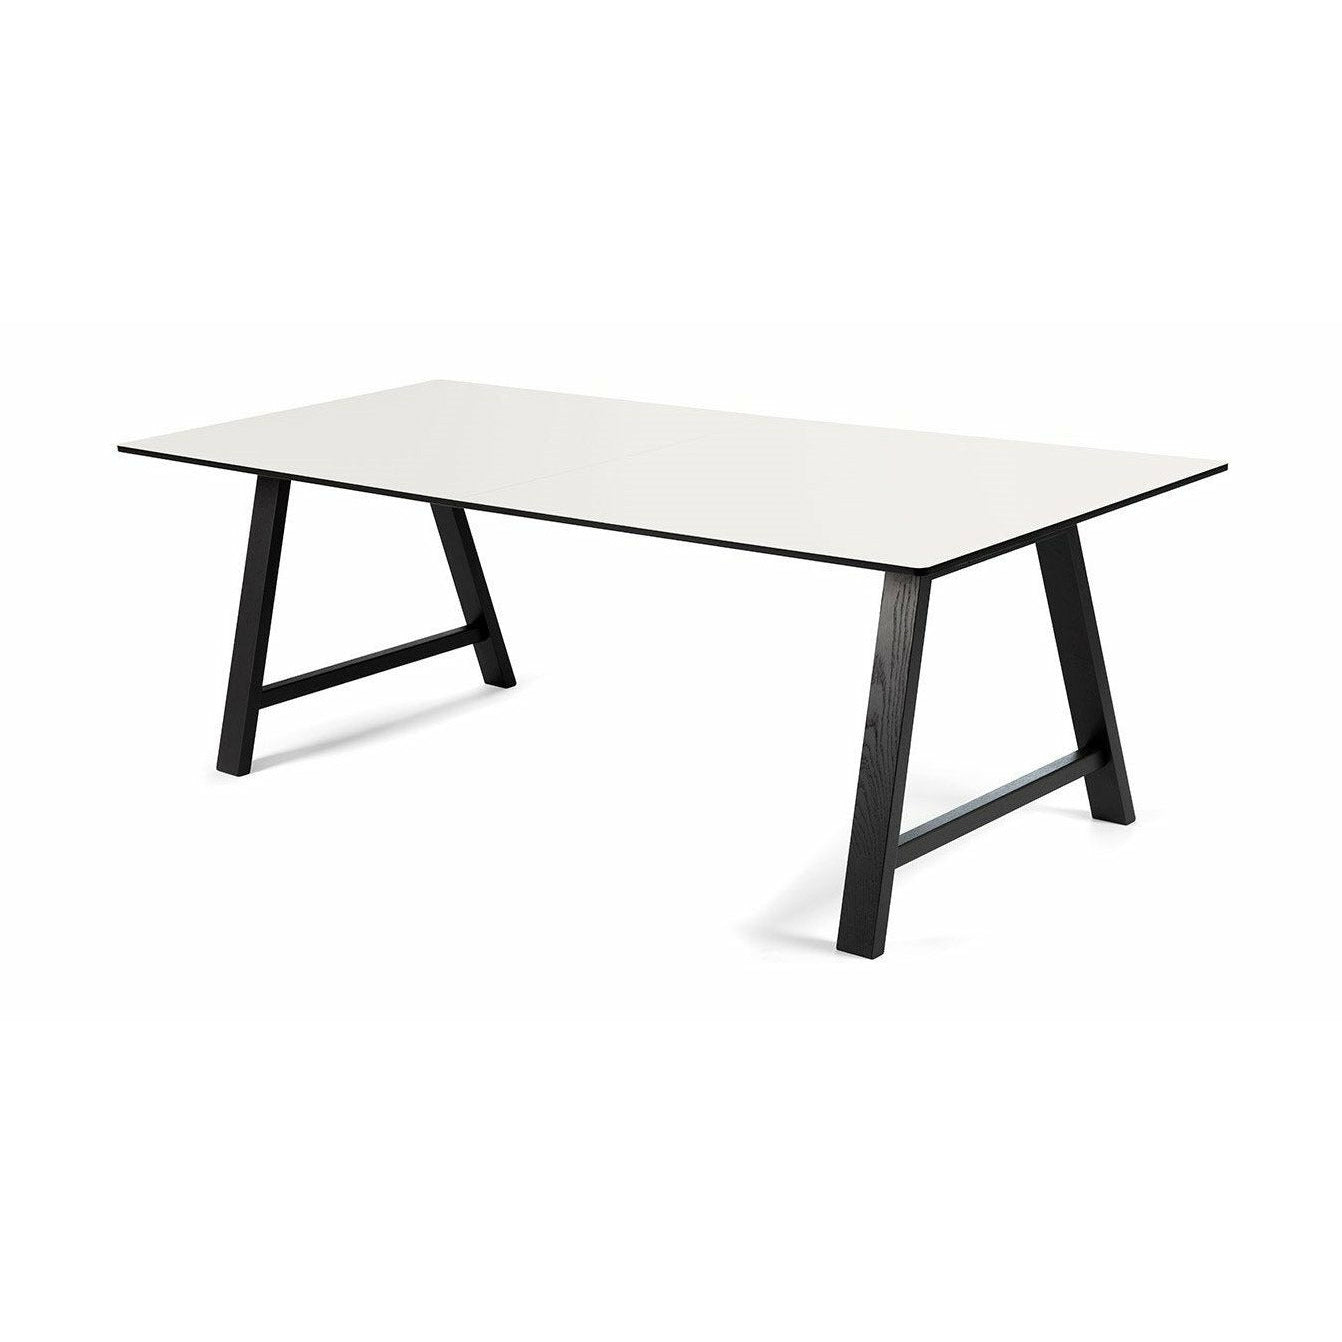 Andersen Furniture T1 Ausziehbarer Tisch, weißes Laminat, schwarzes Gestell, 160cm